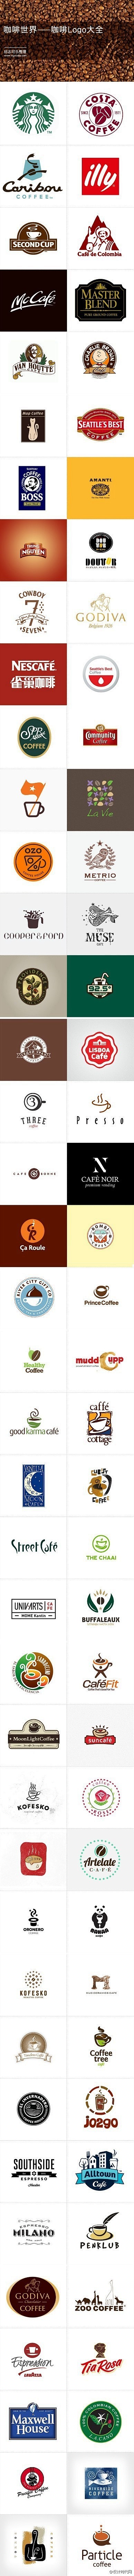 咖啡Logo大全|微刊 - 悦读喜欢